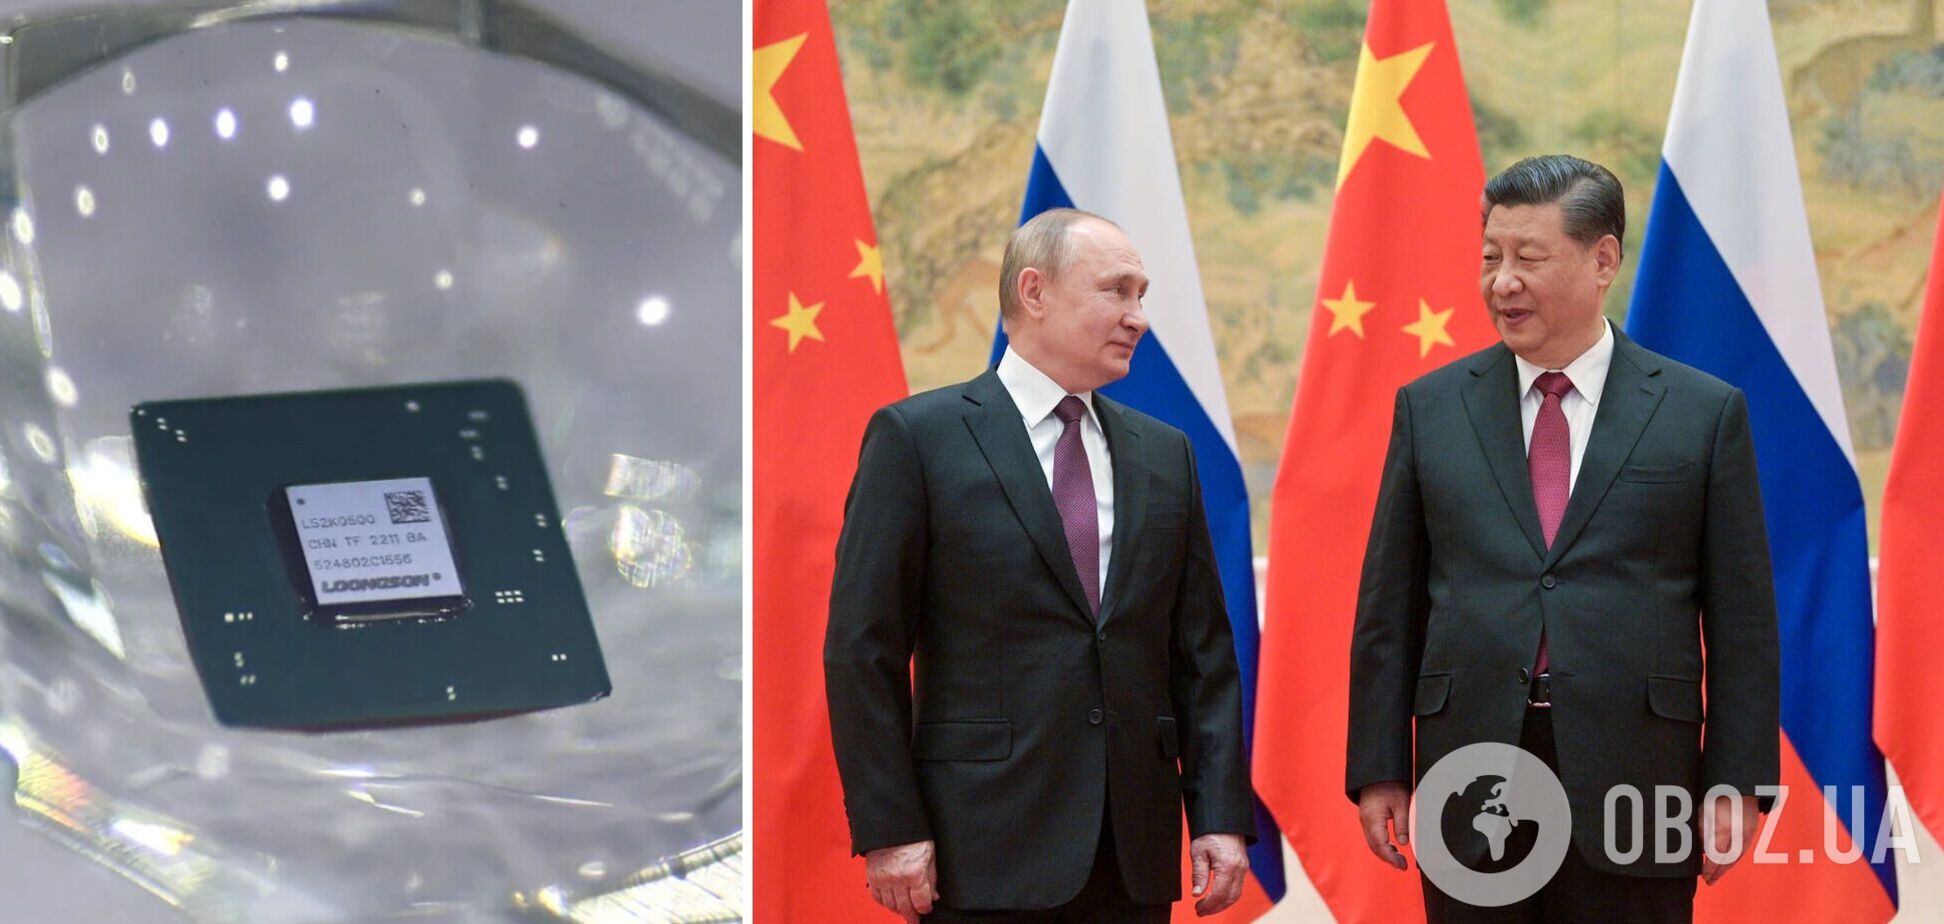 Власти Китая запретили поставлять России чипы, которые та может использовать в военных целях